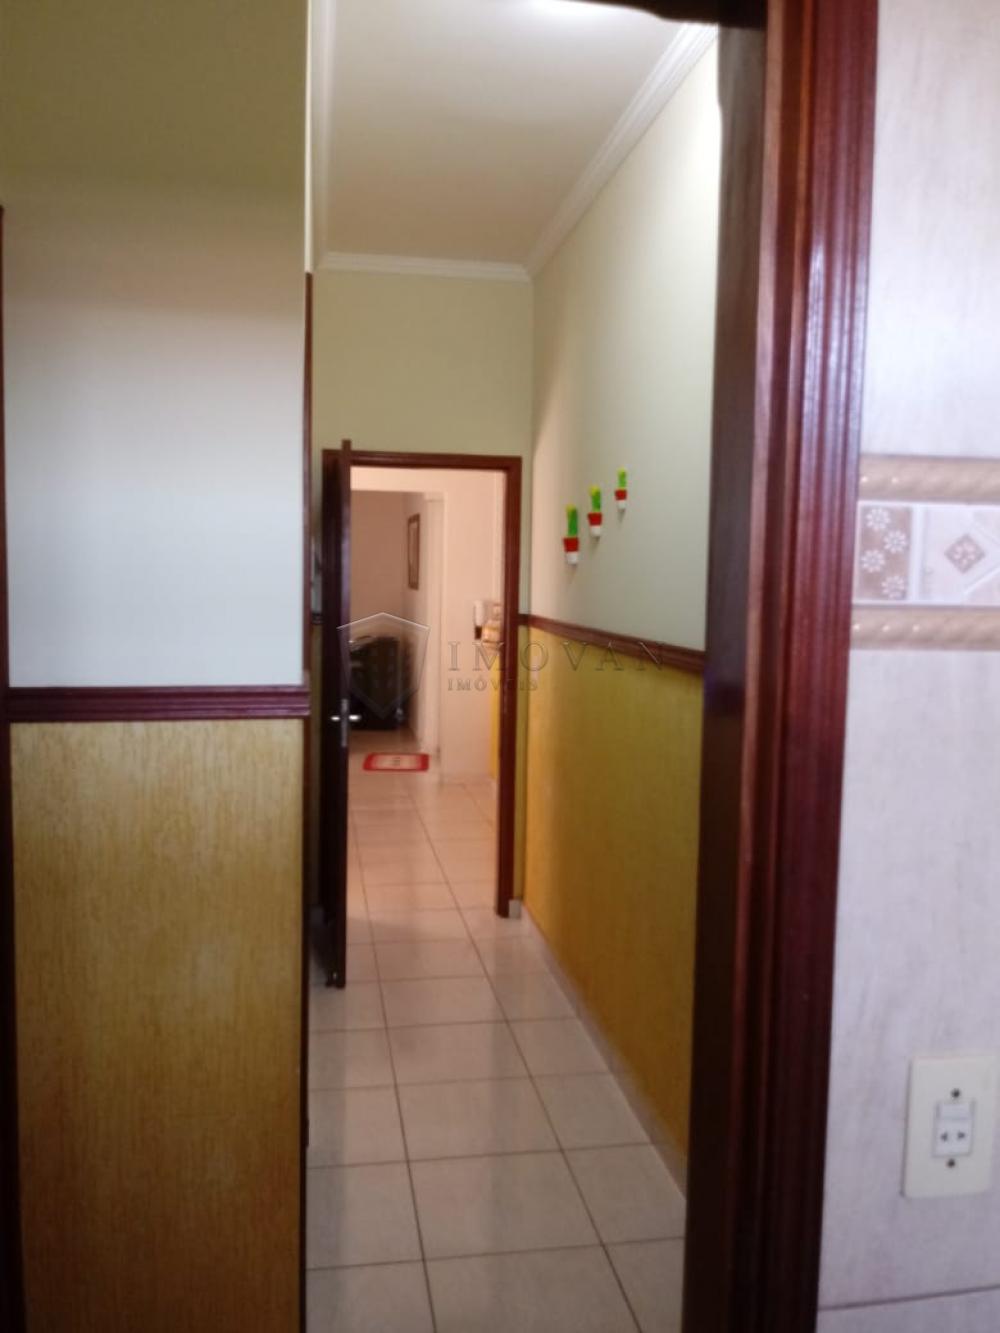 Comprar Casa / Padrão em Ribeirão Preto R$ 440.000,00 - Foto 6